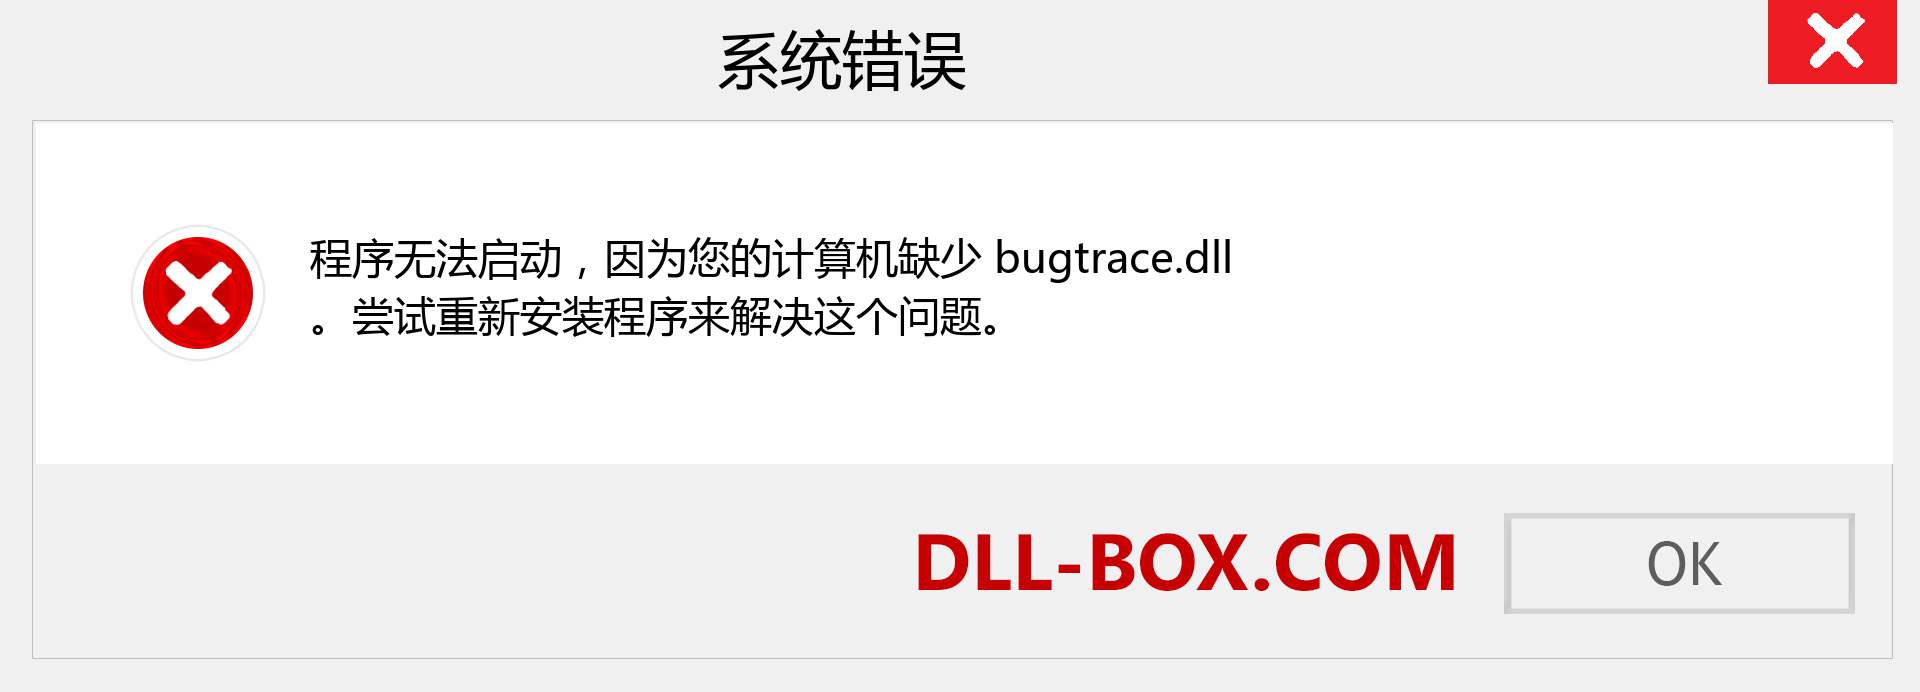 bugtrace.dll 文件丢失？。 适用于 Windows 7、8、10 的下载 - 修复 Windows、照片、图像上的 bugtrace dll 丢失错误